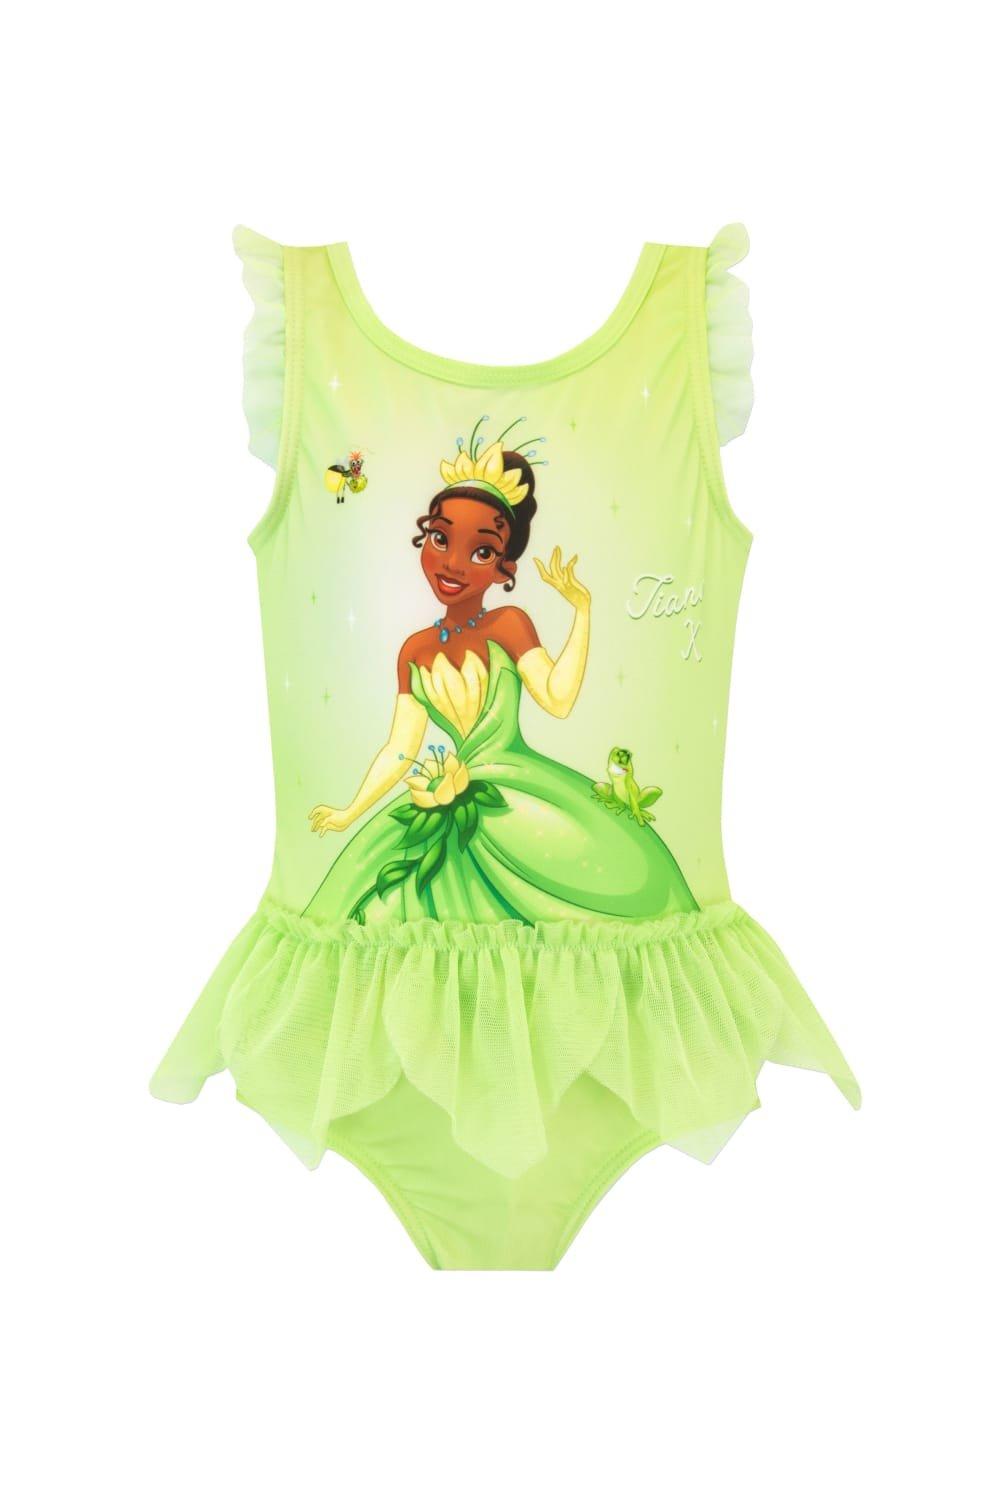 Купальник «Принцесса и лягушка Тиана» Disney, зеленый головоломка принцесса и лягушка 300 500 1000 шт принцесса тиана деревянная детская головоломка подарок для детей и взрослых